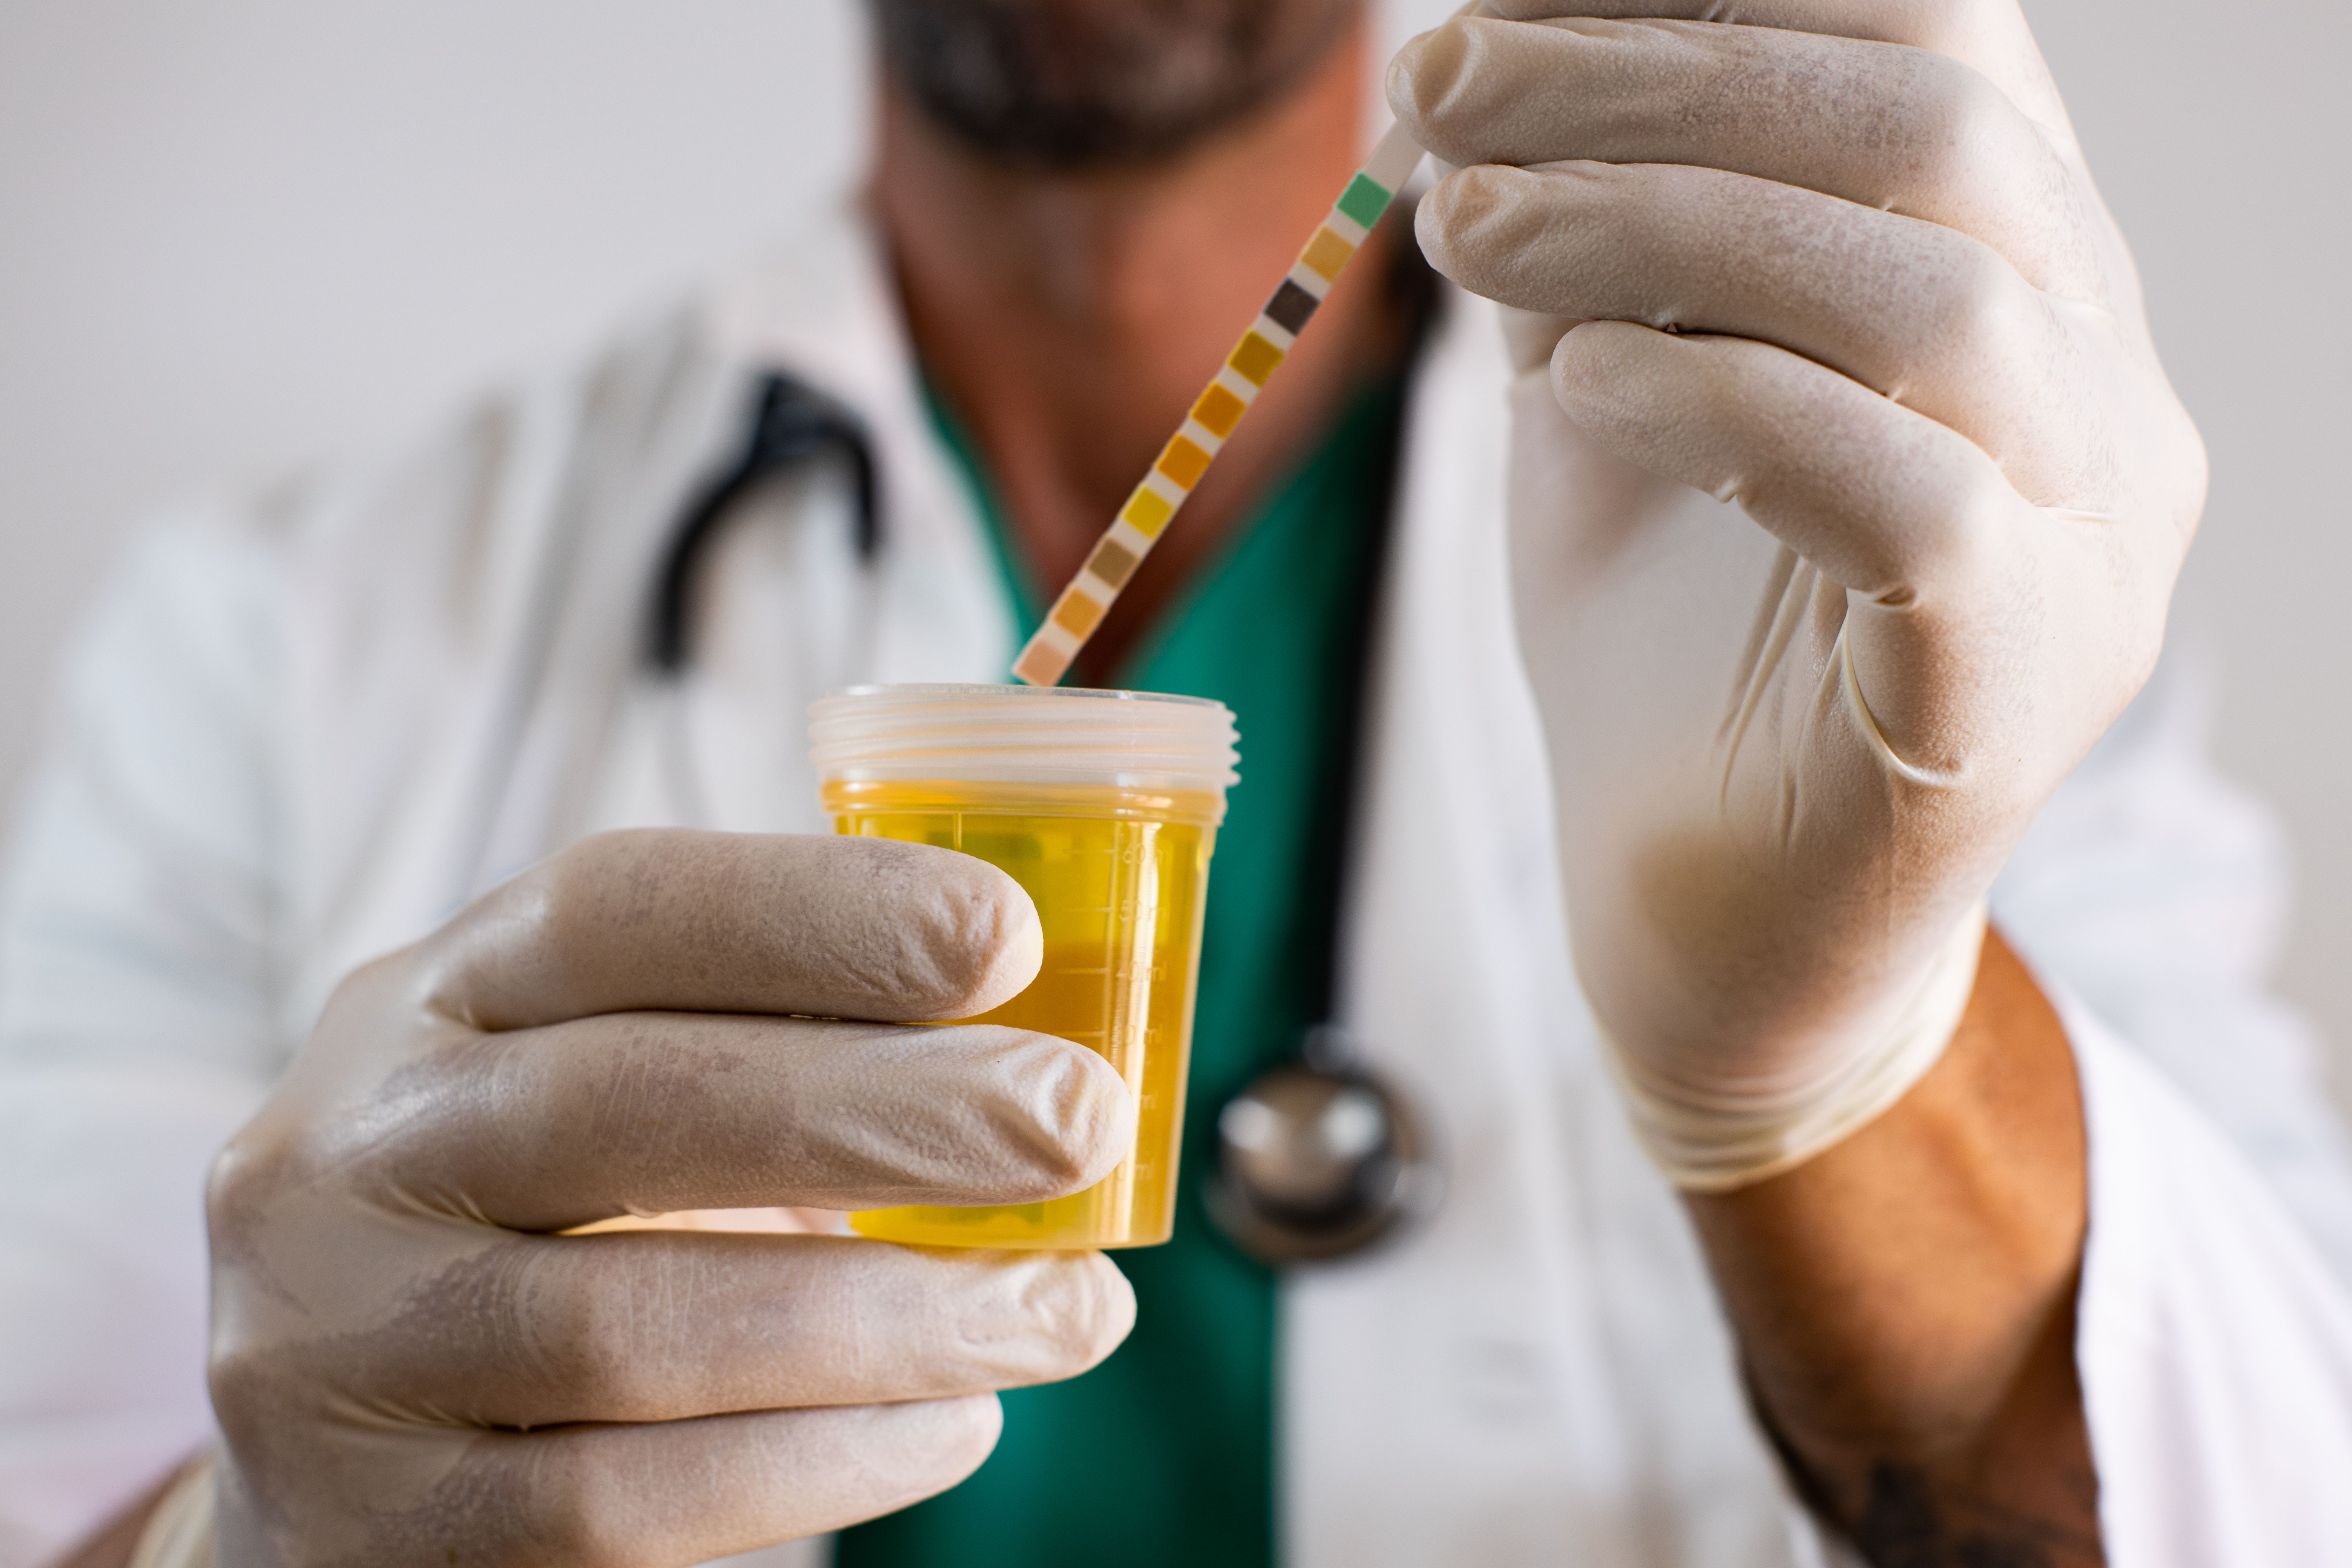 adulterating urine specimens